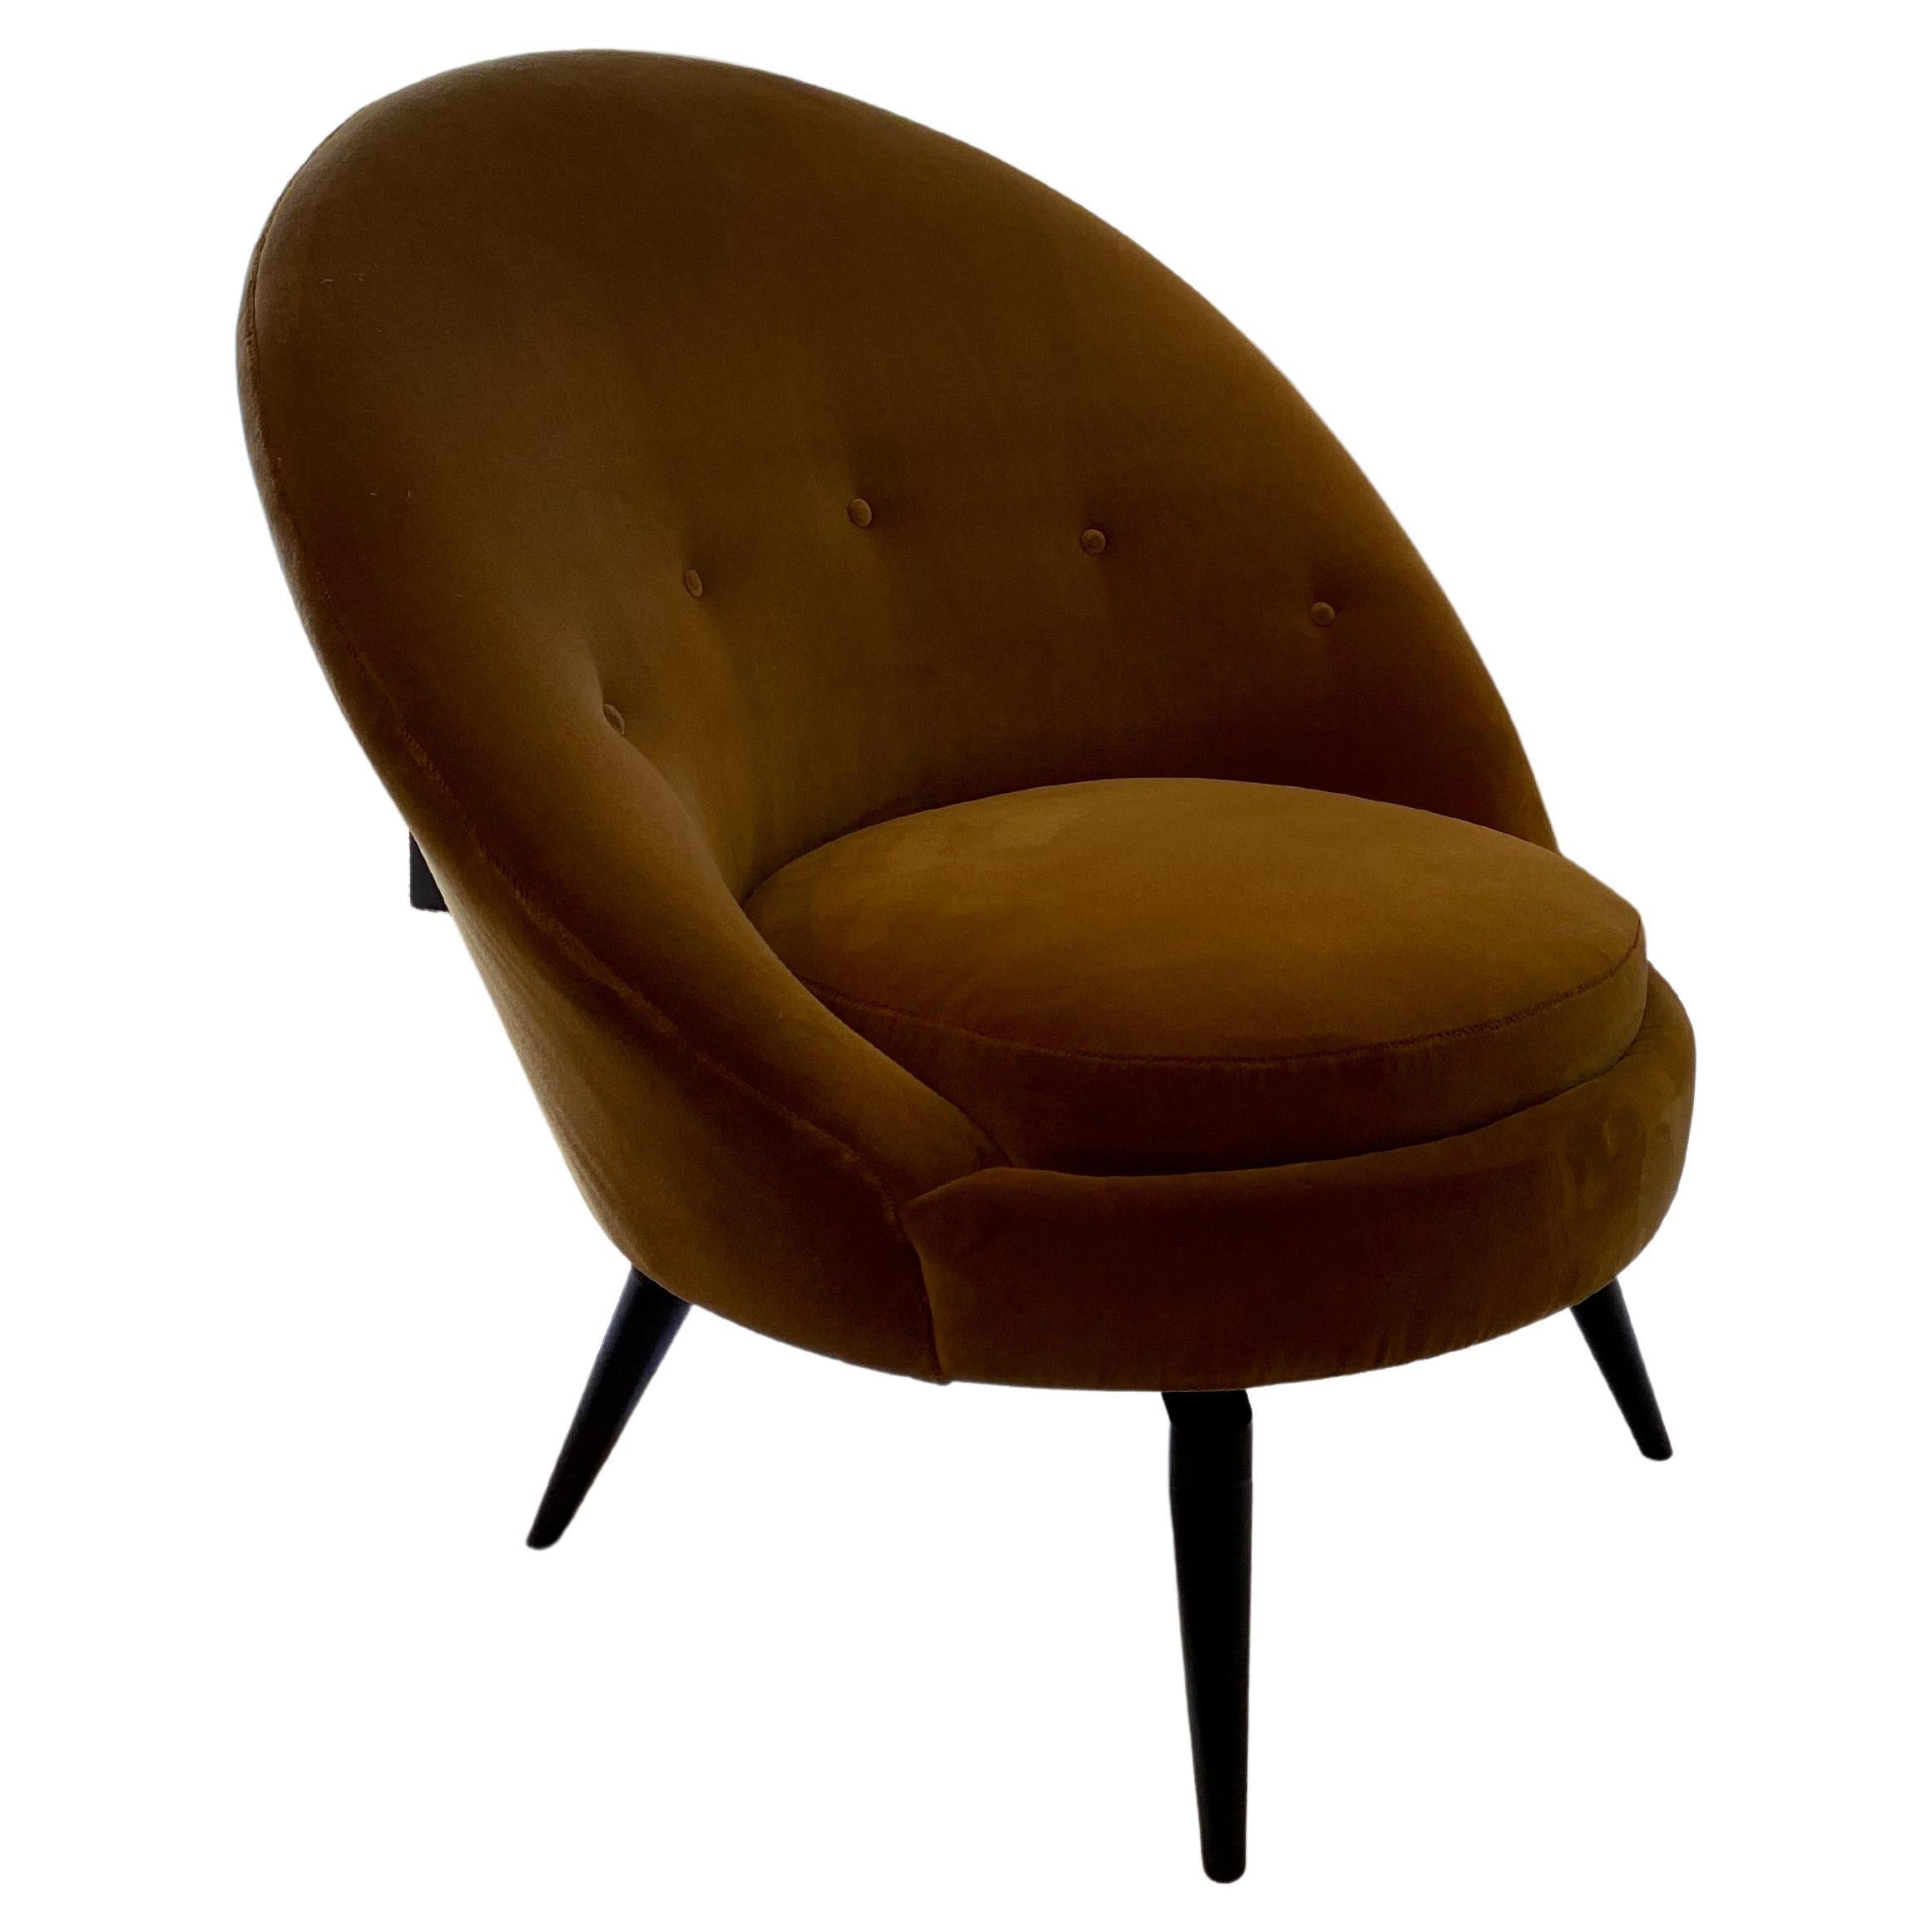 Fauteuils oeufs pivotants dans le style français du milieu du siècle. Cette chaise sophistiquée est tapissée d'un luxueux faux Mohair épais, doublé d'or moutarde. Ce modèle très élégant et polyvalent est aussi confortable qu'il en a l'air. Il a été